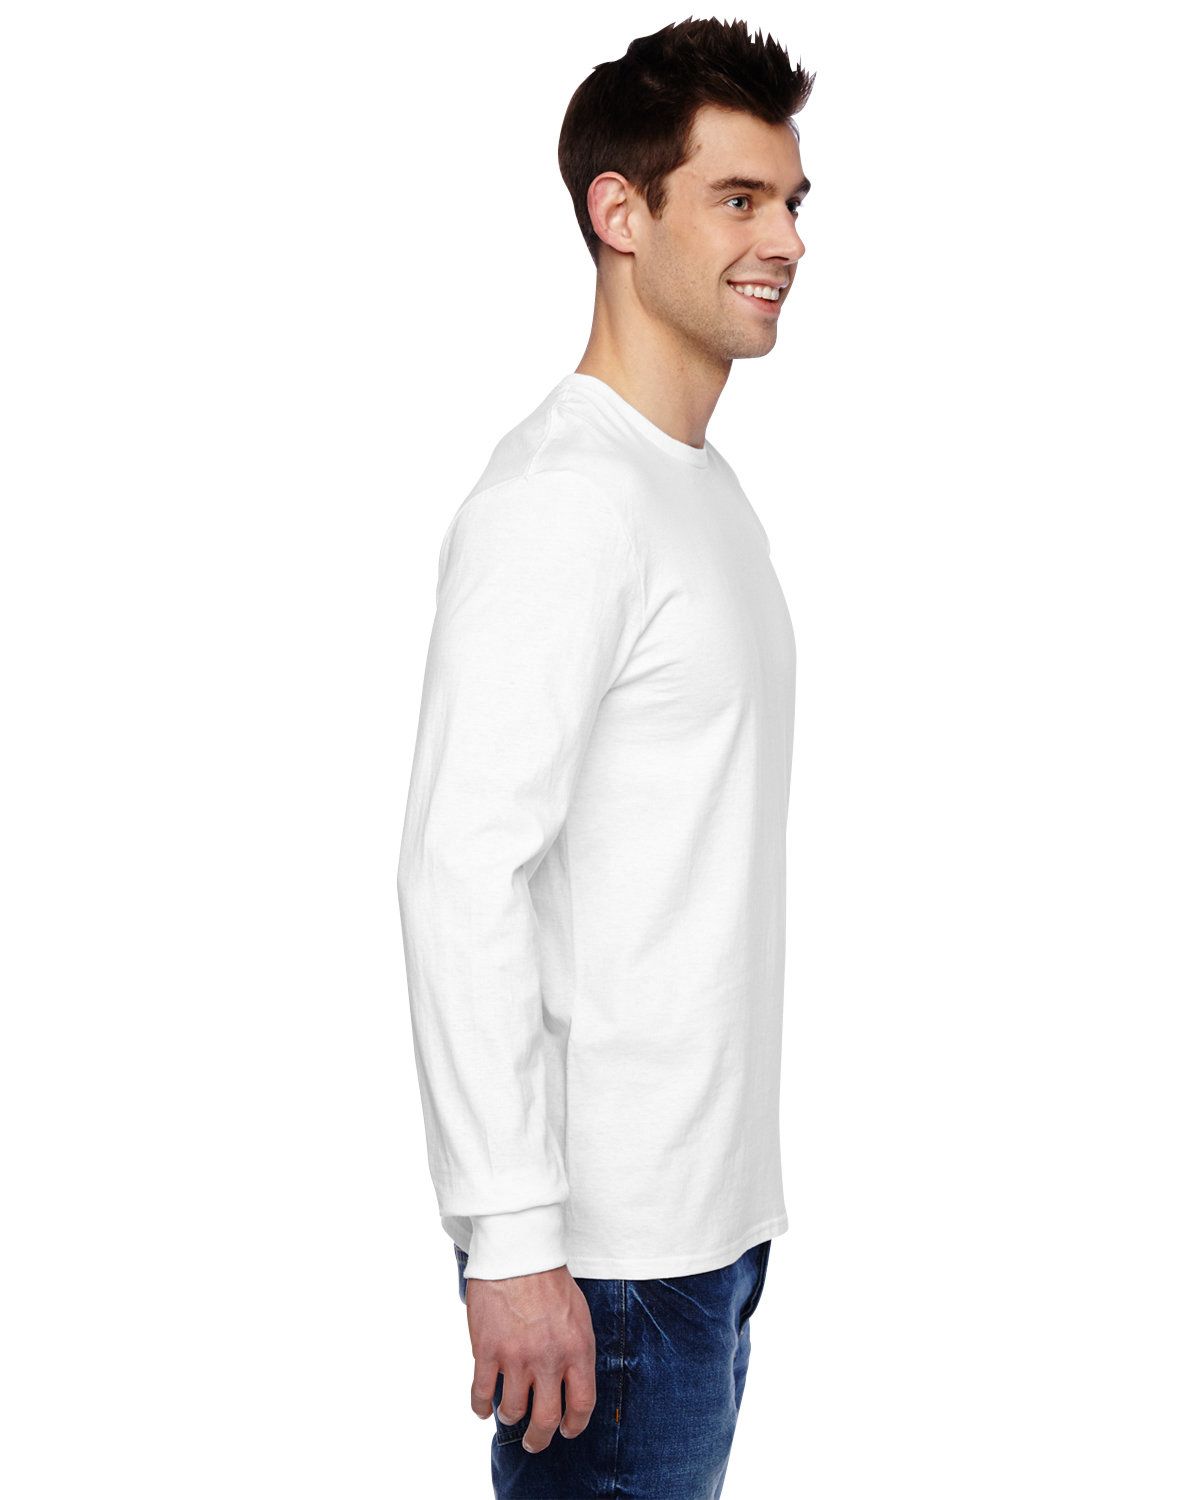 'Fruit Of The Loom SFLR Men's Sofspun Cotton Jersey Long Sleeve T-Shirt'